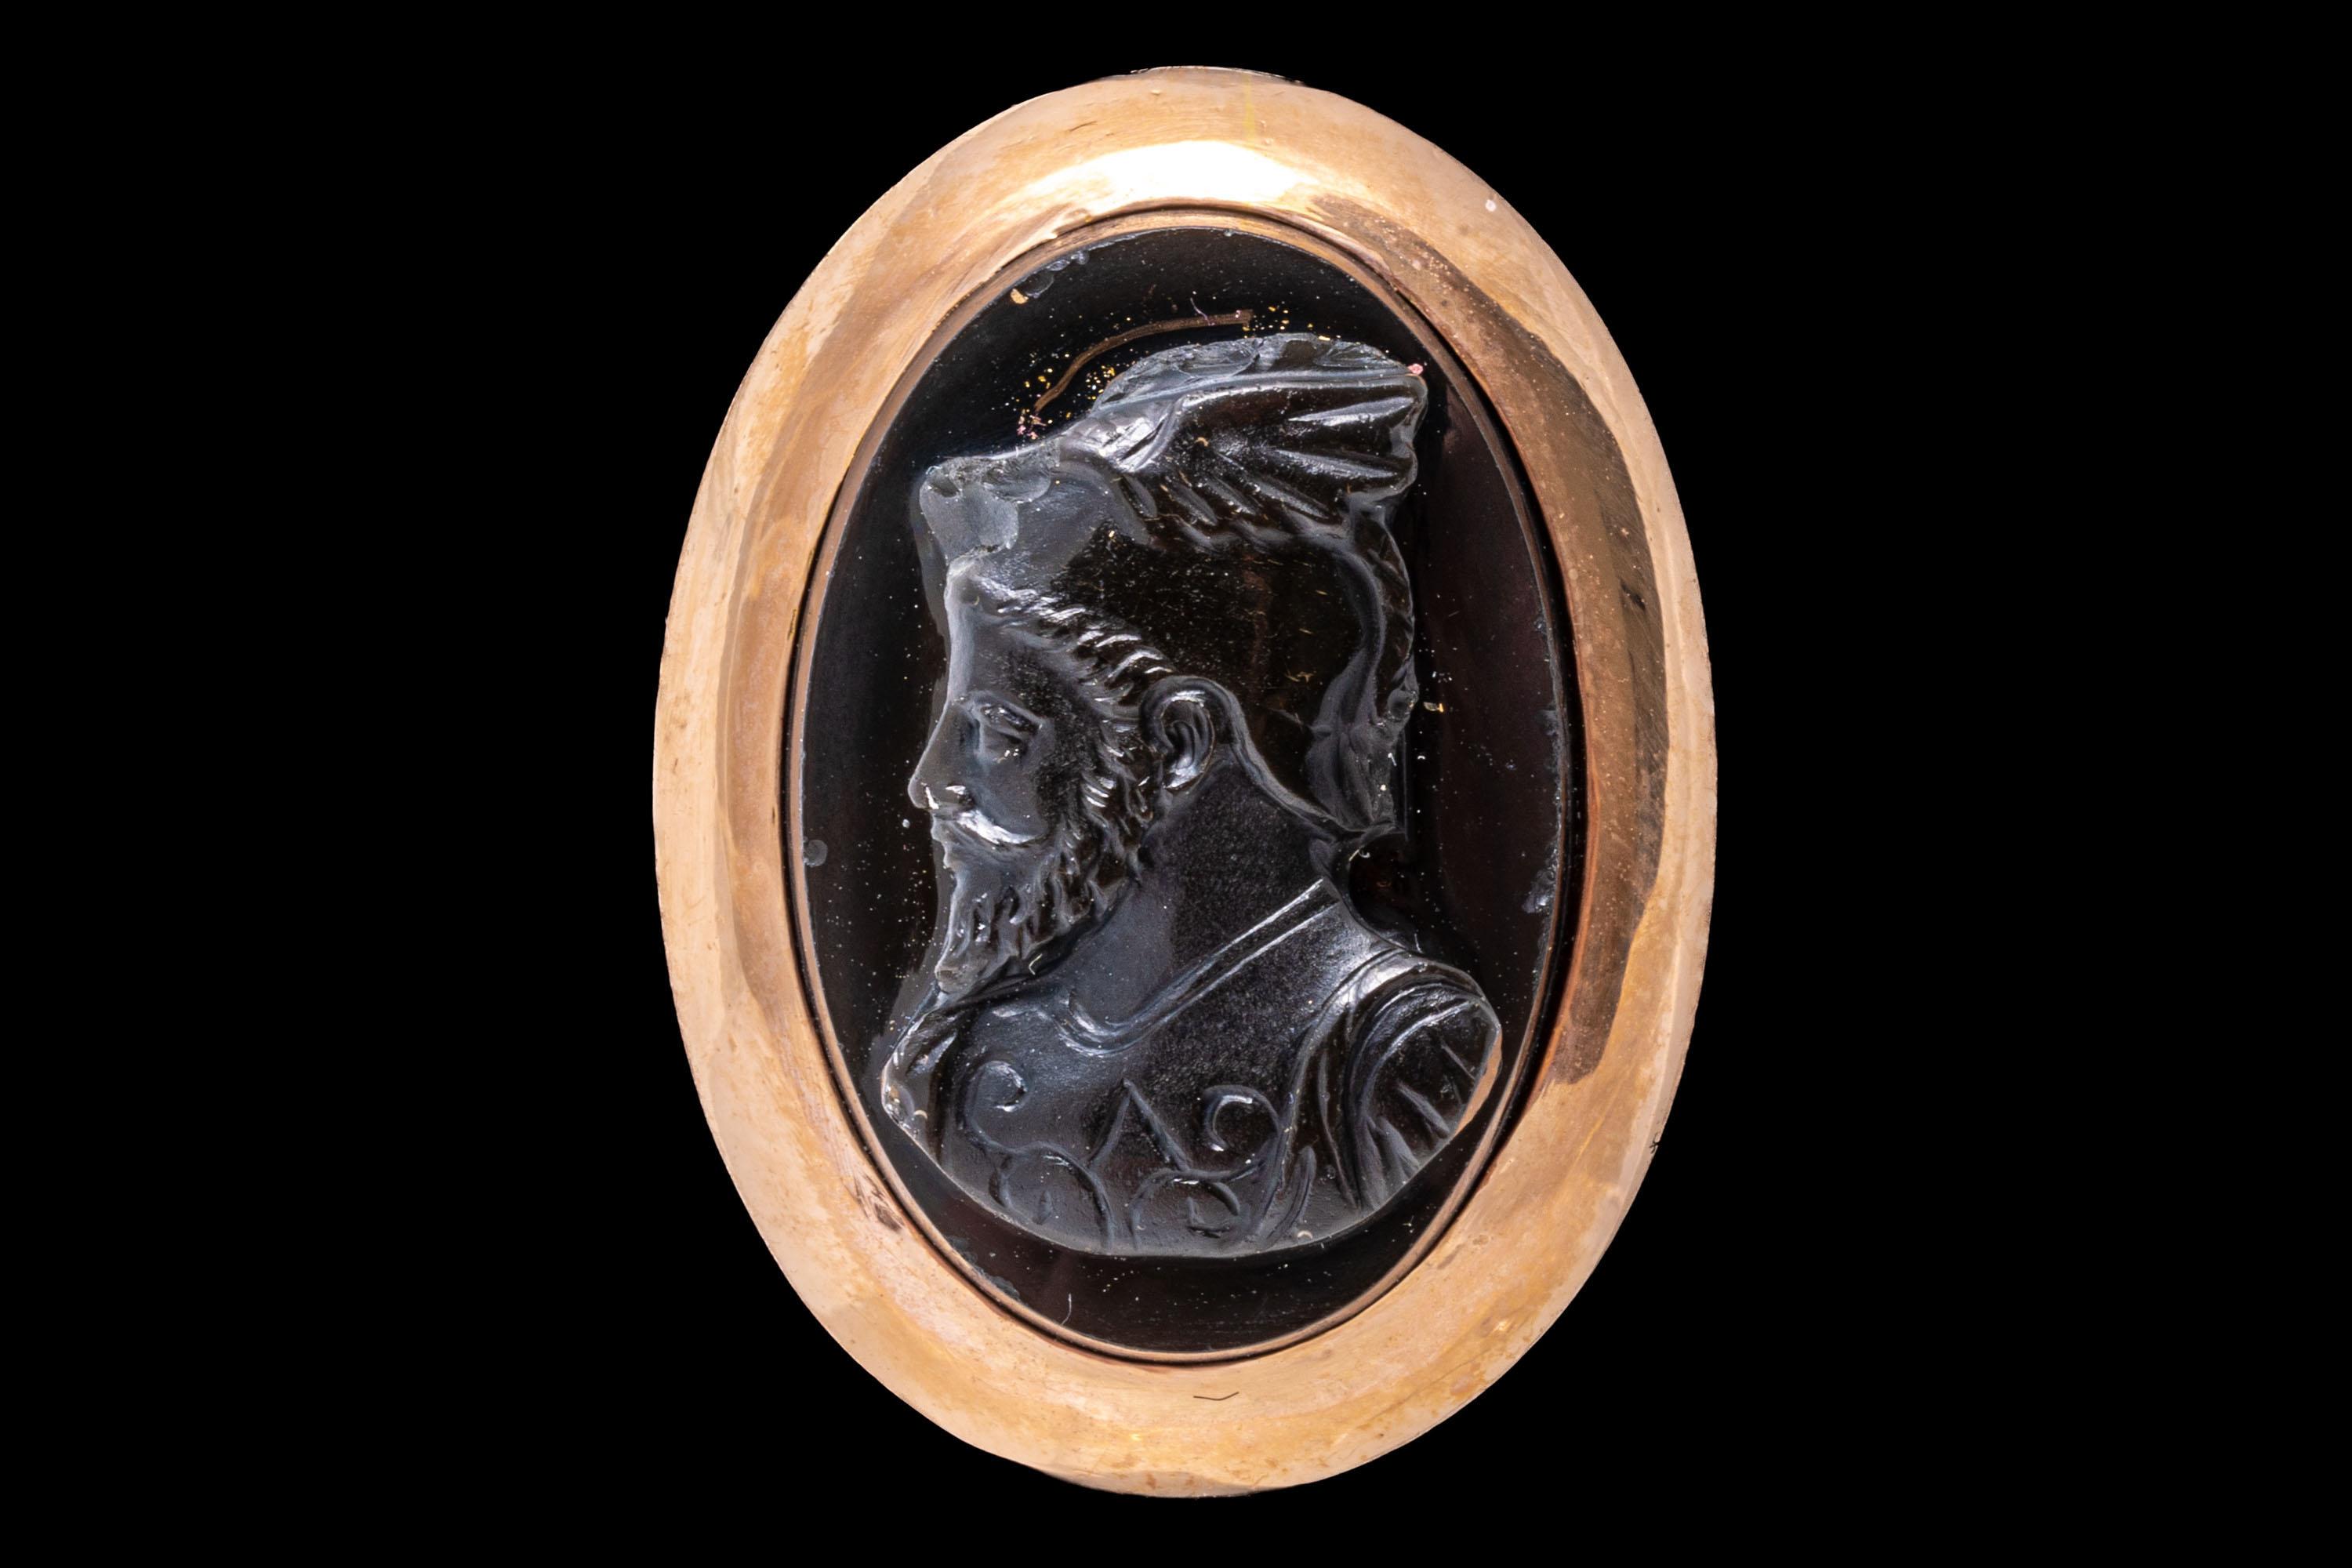 bague en or rose 14k. Cette étonnante bague camée vintage ovale en onyx noir présente un beau buste barbu de profil, tourné vers la gauche, et mis en valeur par un large cadre poli.
Marques : Aucune, tests 14k
Dimensions : 5/8